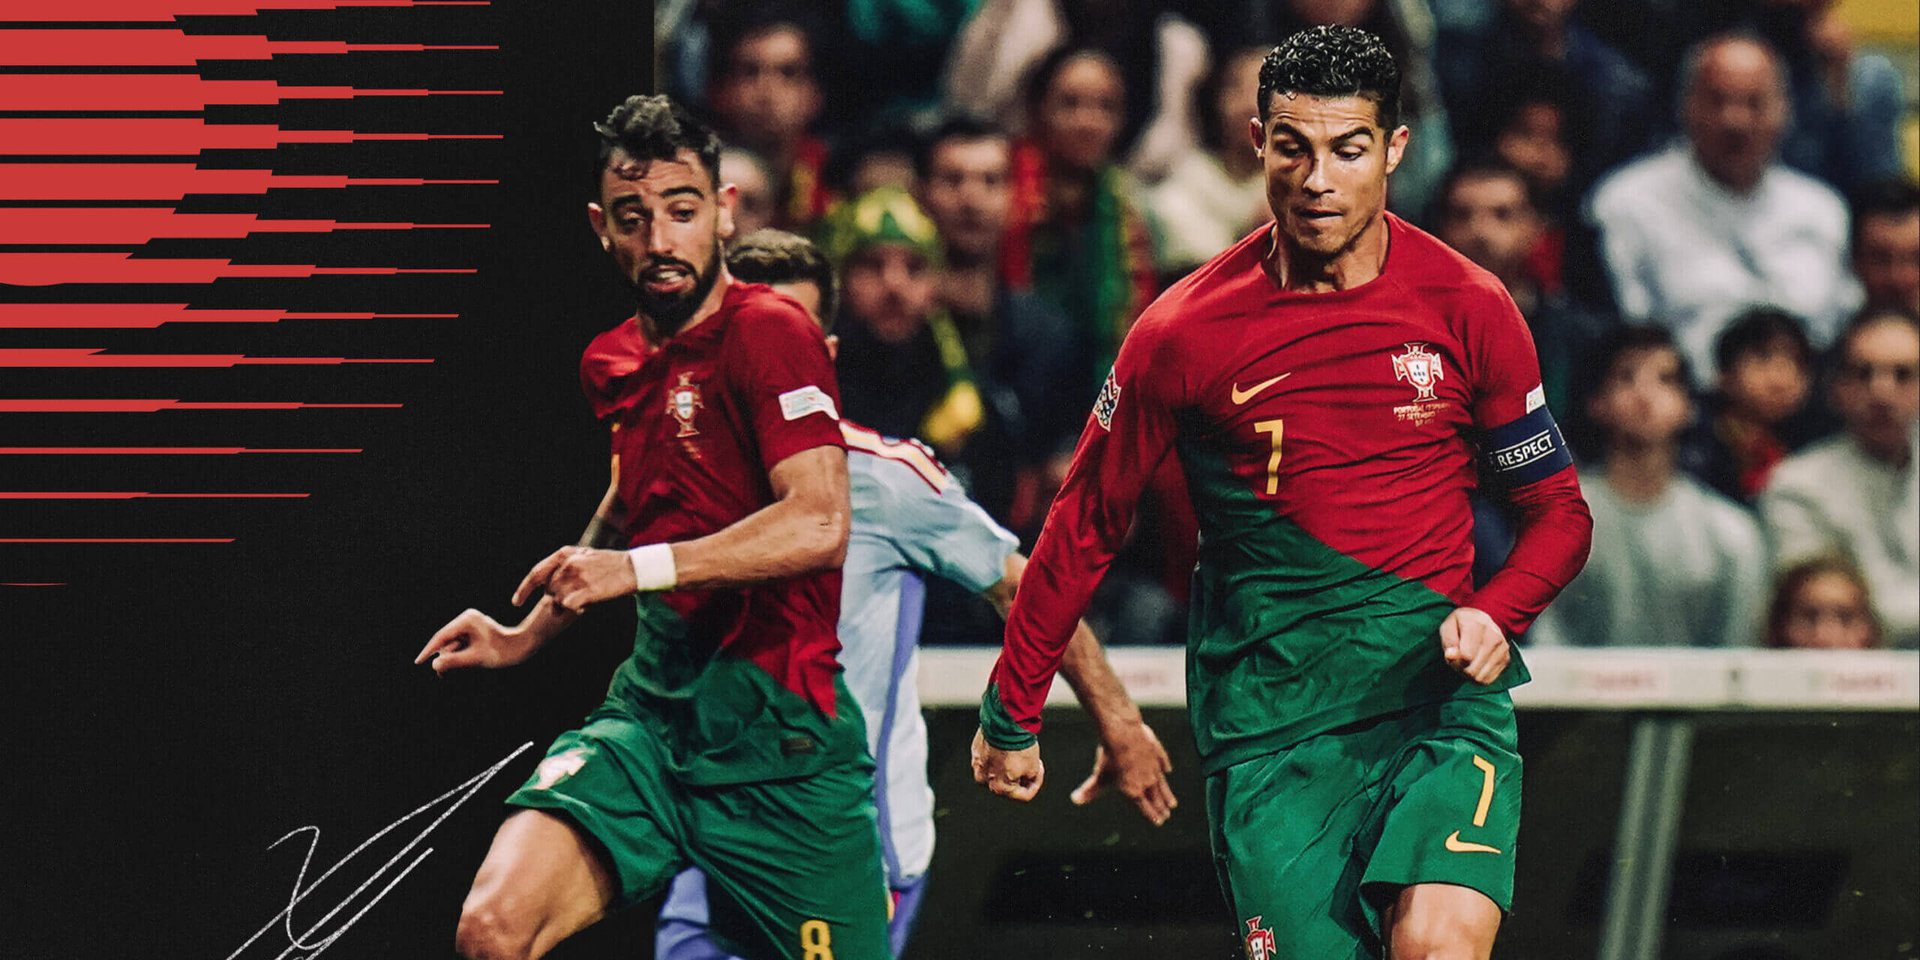 Panduan Piala Dunia 2022 Portugal: Bintang muda, bintang tua, dan perdebatan akrab tentang Ronaldo